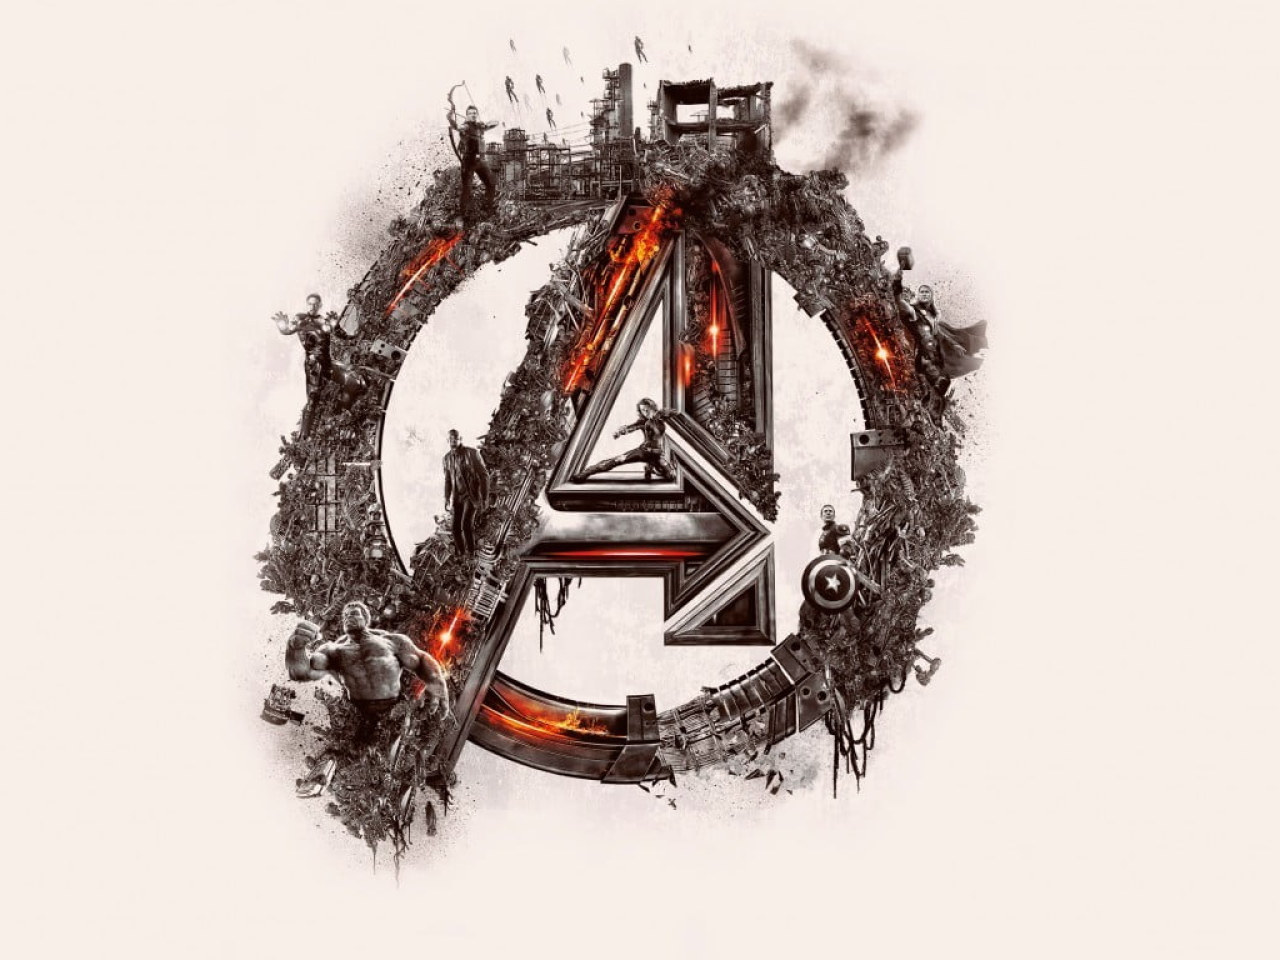 Marvel Avengers Logo Wallpaper, Avengers: Age Of Ultron, The Avengers, Marvel Cinematic Universe • Wallpaper For You